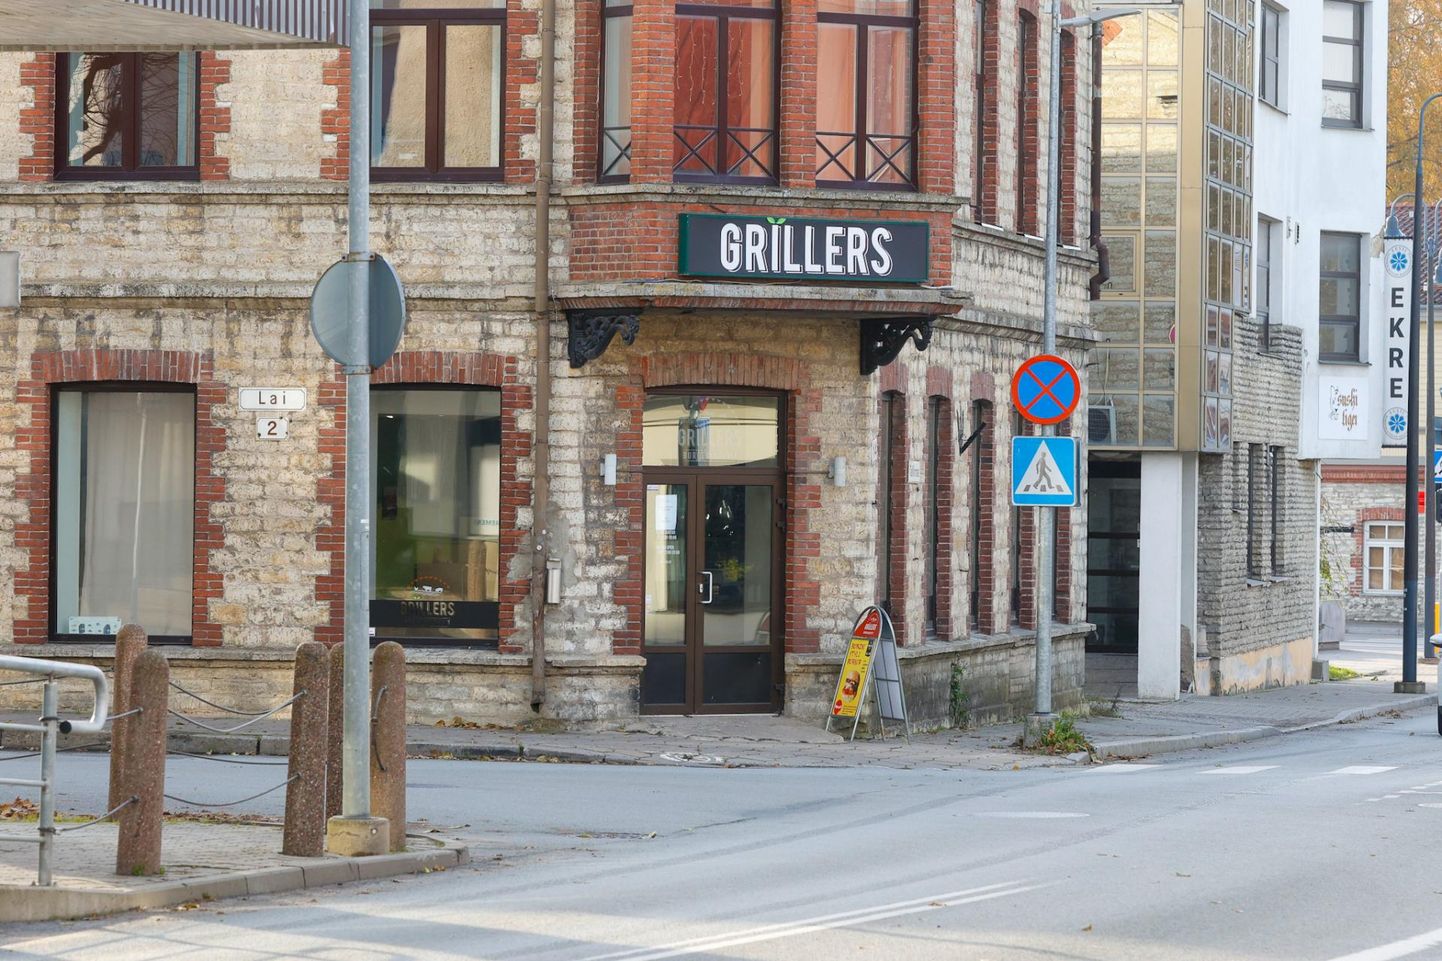 Grillers on käsitööburgereid valmistanud alates 2014. aastast. Viimased pihvid visatakse grillile pühapäeval, 12. novembril.